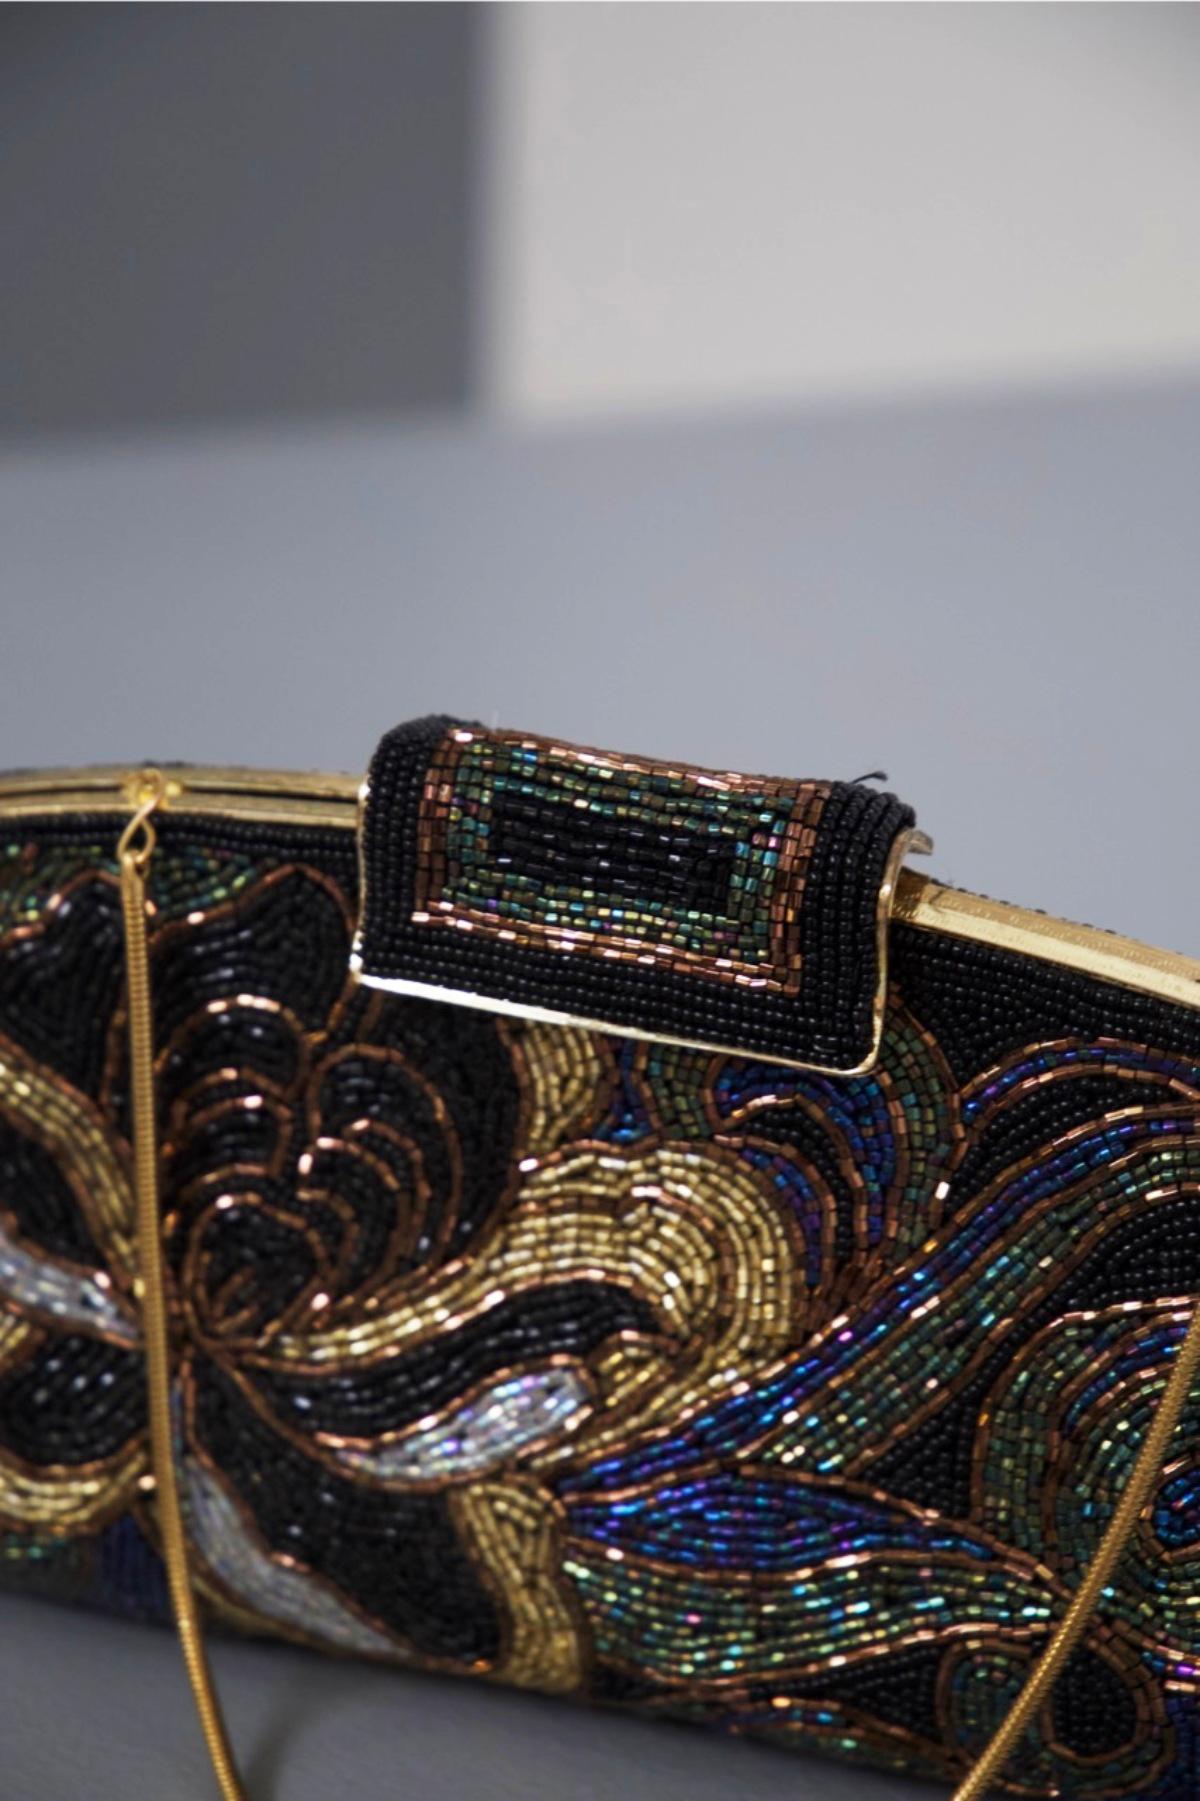 Élégante pochette en tissu avec des décorations en perles de belle fabrication italienne, appartenant aux années 1980.
La pochette est un sac à main pour le théâtre ou les occasions très posé et élégant au-dessus de la normale, a une forme